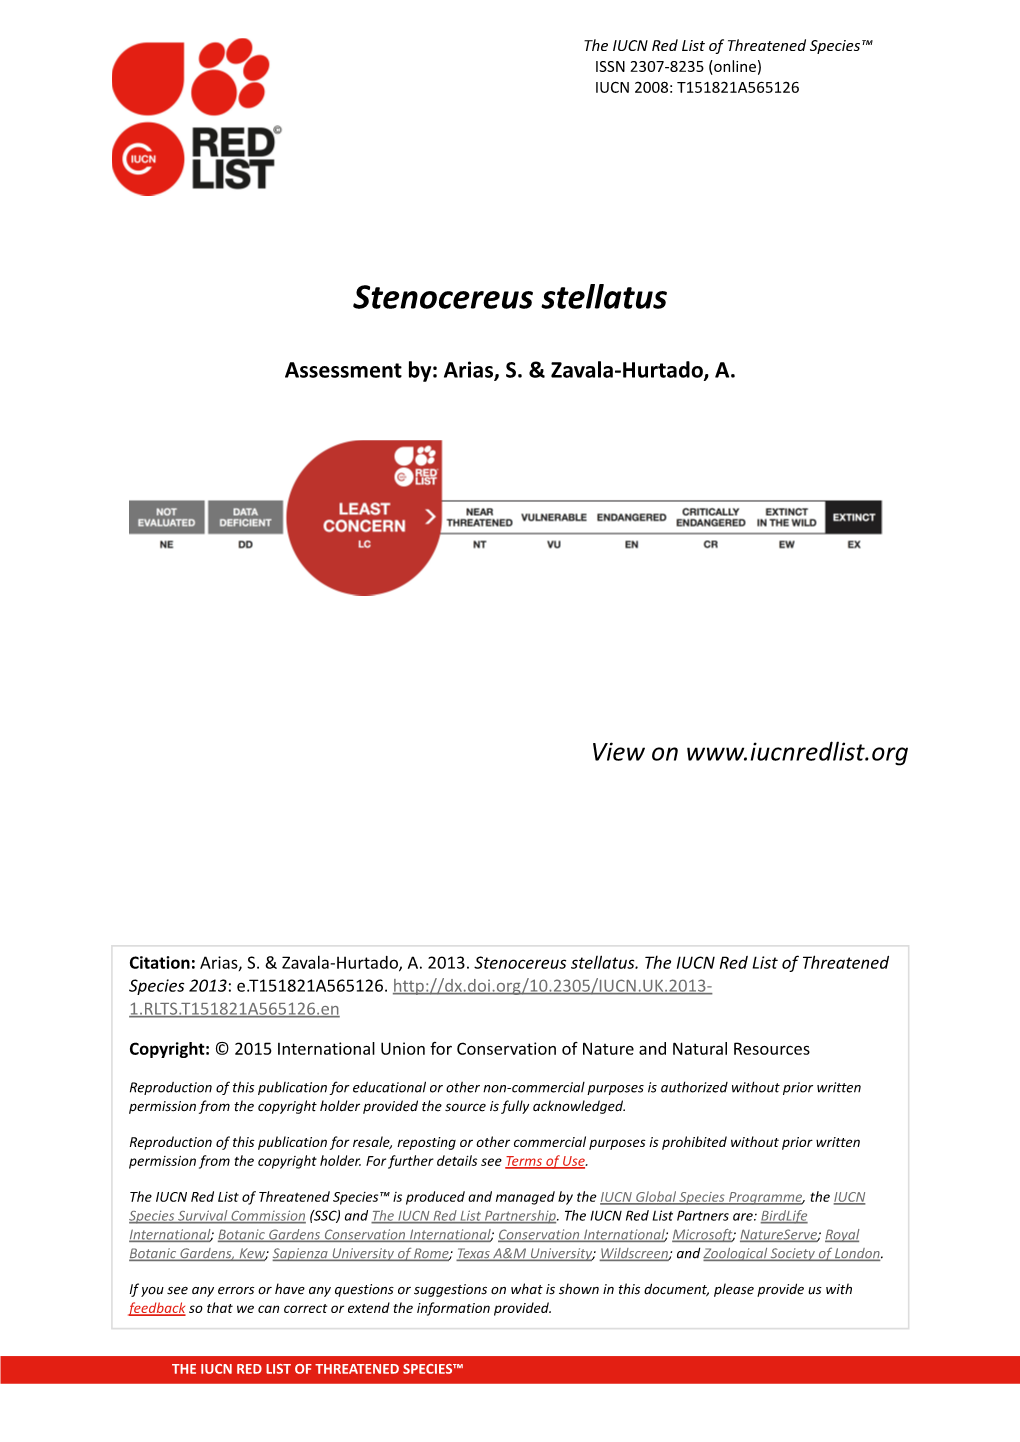 Stenocereus Stellatus